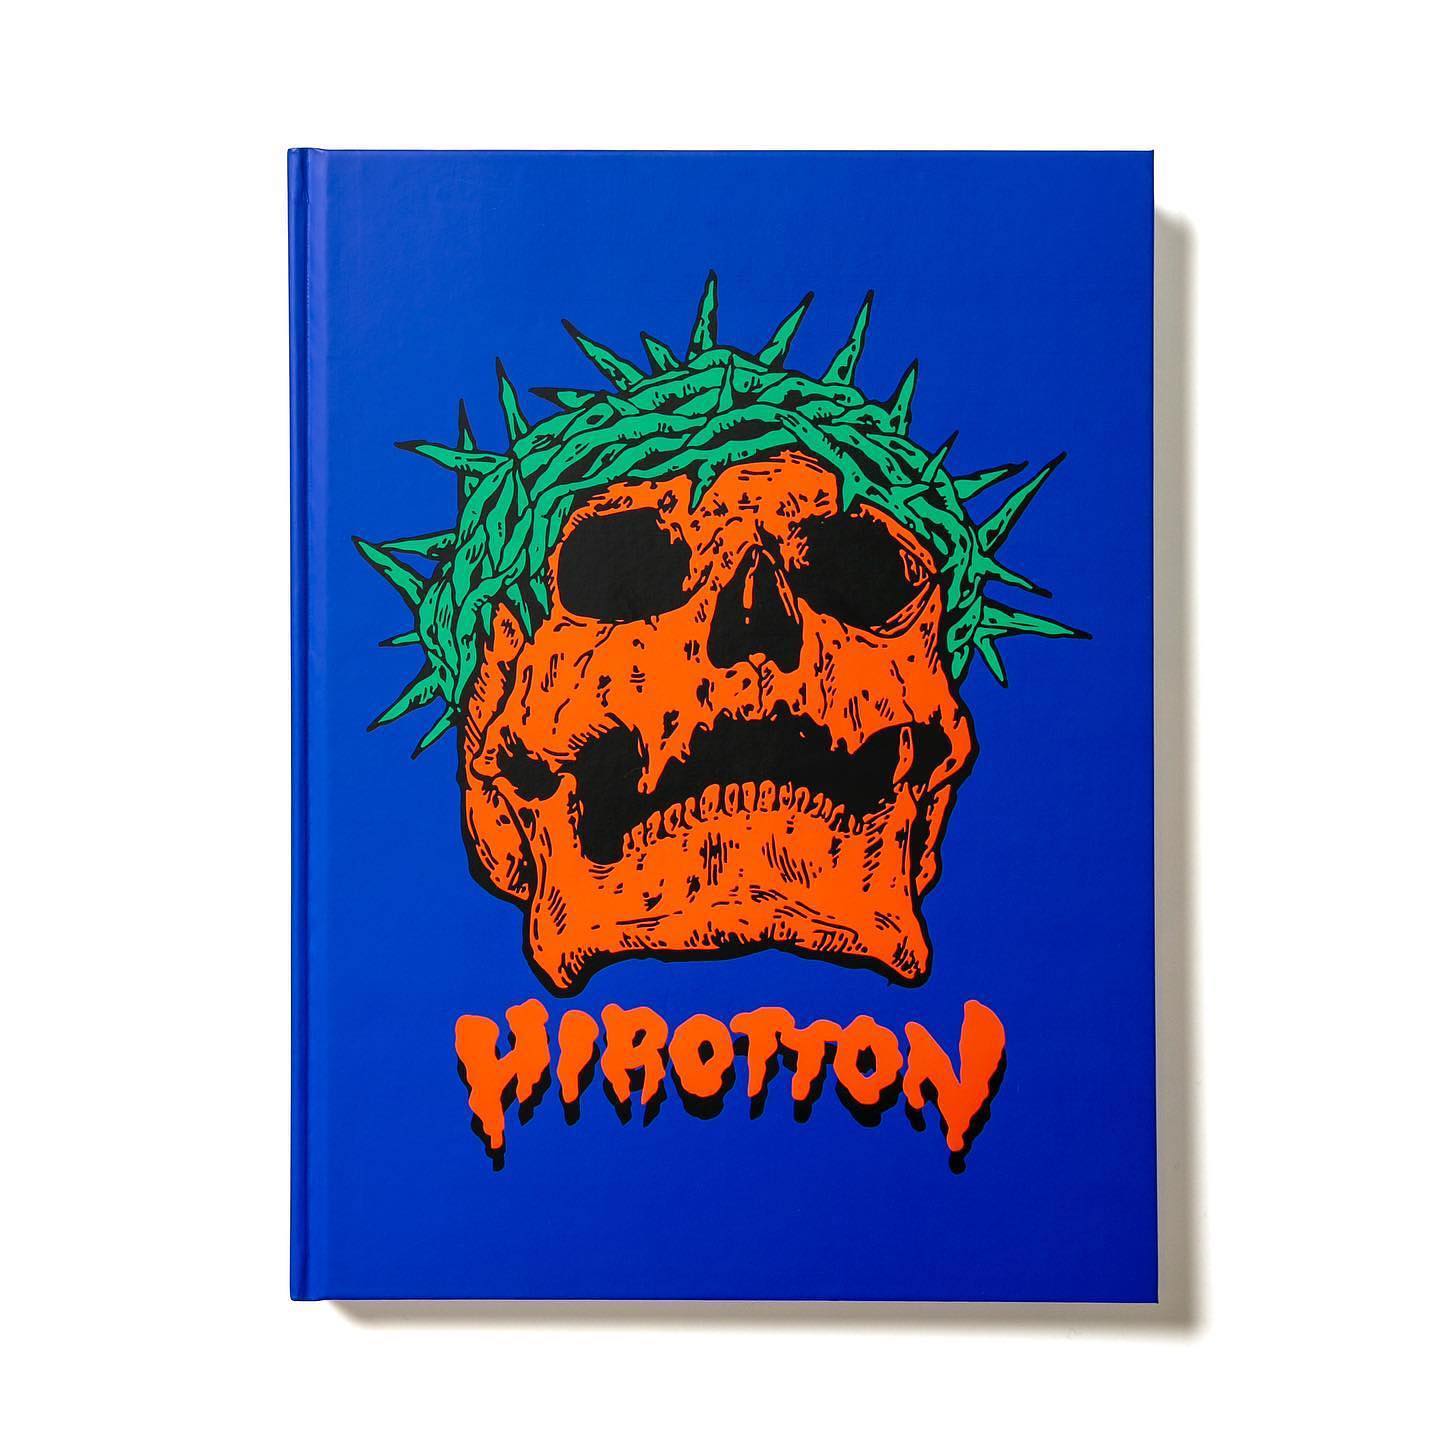 本日発売HIROTTON 1st ART BOOK“PARADOX”パンクシーン、スケートボードカルチャーに強い影響を受け、独自の作風を築きあげたアーティスト「HIROTTON（ヒロットン）」の待望のアートブックをHIDDEN CHAMPIONより発売します。この『PARADOX』は、HIROTTONがアーティストとして活動を始めた2011年から現在に至るまでの約10年間の活動を収めたアートブックです。HIROTTONはロンドンに渡りアーティスト活動をはじめ、現地で初個展を開催。その後帰国してからも精力的に活動し、自身のアパレルプロジェクトPARADOXの展開や、Heroin Skateboardsをはじめ、TOY MACHINEやFOUNDATION、VANS、PUMAなど数多くのブランドにアートワークの提供を行ってきました。このアートブックでは、2022年に描いた新作と、これまでに彼が描いてきた様々な作品を豪華に200点以上も収録し、さらに展示風景やコラボレーションしたプロダクト群に至るまで、多くの写真も掲載しています。独特な世界観で多くのファンを魅了してやまないHIROTTONの貴重なファーストアートブックをぜひご覧ください。“PARADOX”Artworks by HIROTTONForeword: Fos (Heroin Skateboards)Afterword: HirottonArt Director: Hidenori MatsuokaTranslator: Masafumi KajitaniSize: W224 x H300mmPage: 288 pages, Hard CoverISBN978-4-9907395-4-6 C0071 ¥7000E販売価格：7,000円＋消費税